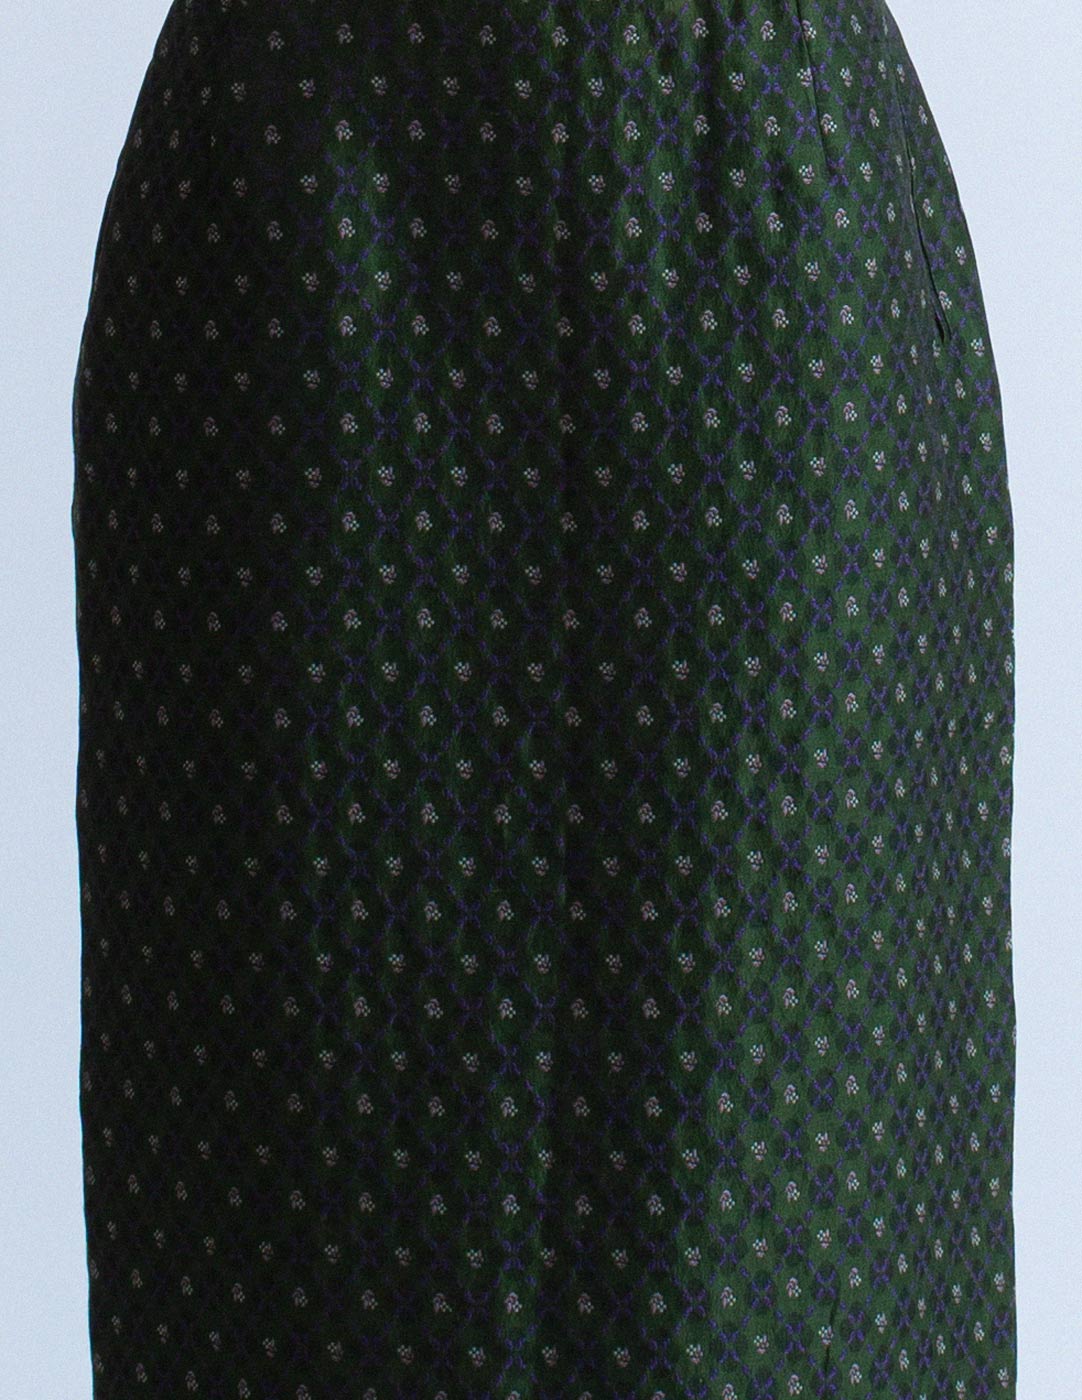 Jean Paul Gaultier vintage floral-motif skirt suit pattern detail